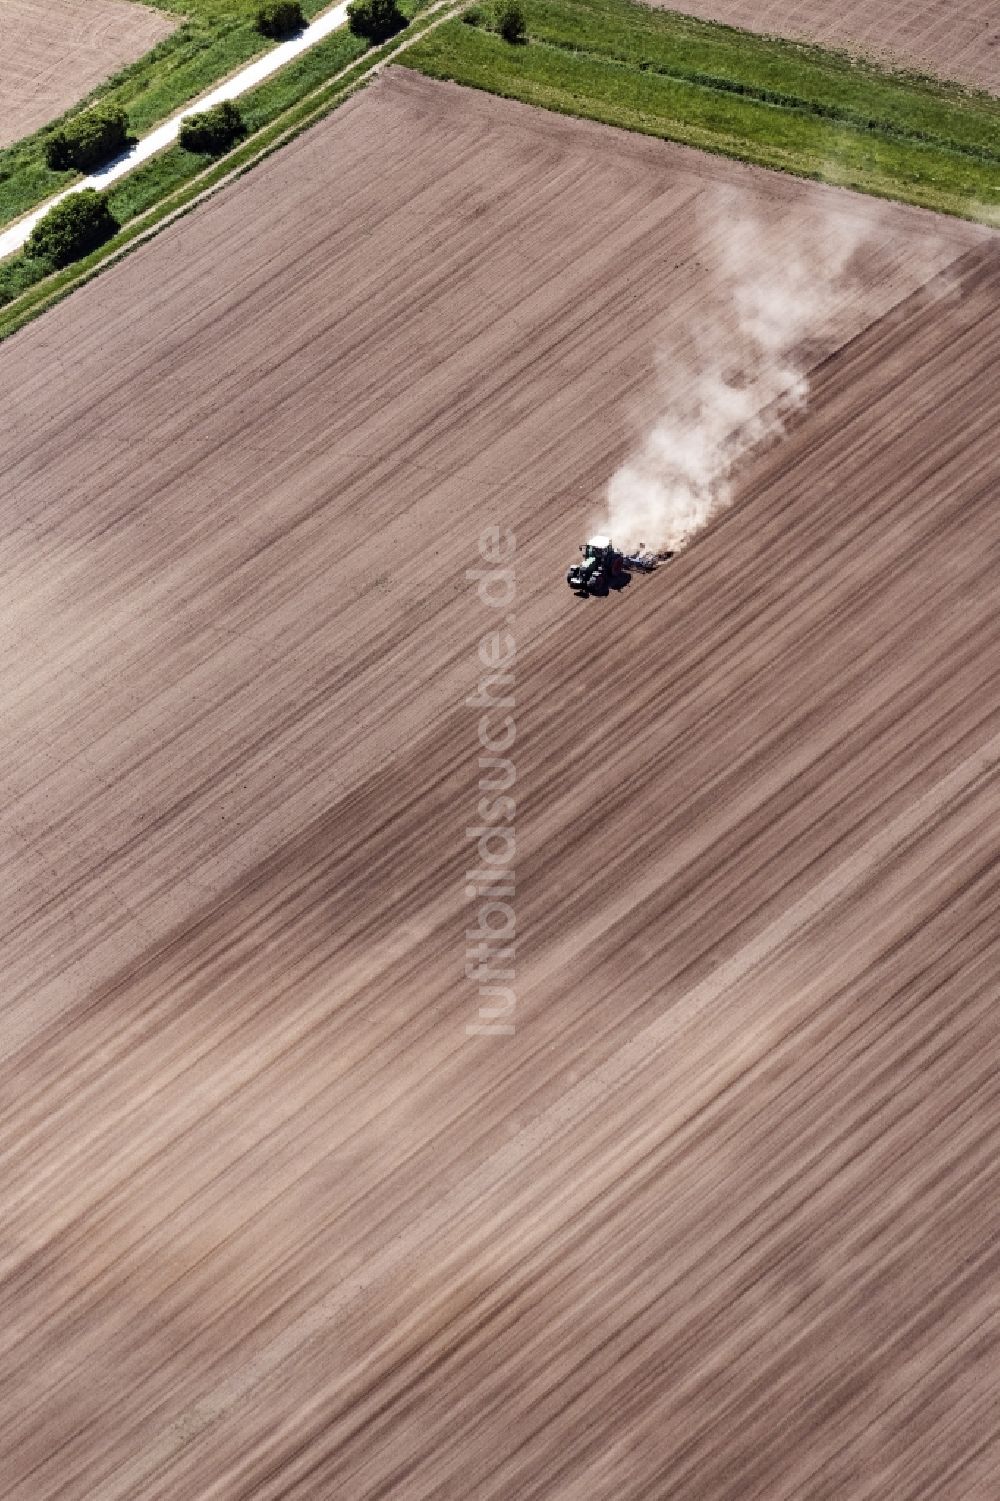 Luftbild Worms - Umpflugarbeiten und Umschichtung der Erde durch einen Traktor mit Pflug auf landwirtschaftlichen Feldern in Worms im Bundesland Rheinland-Pfalz, Deutschland